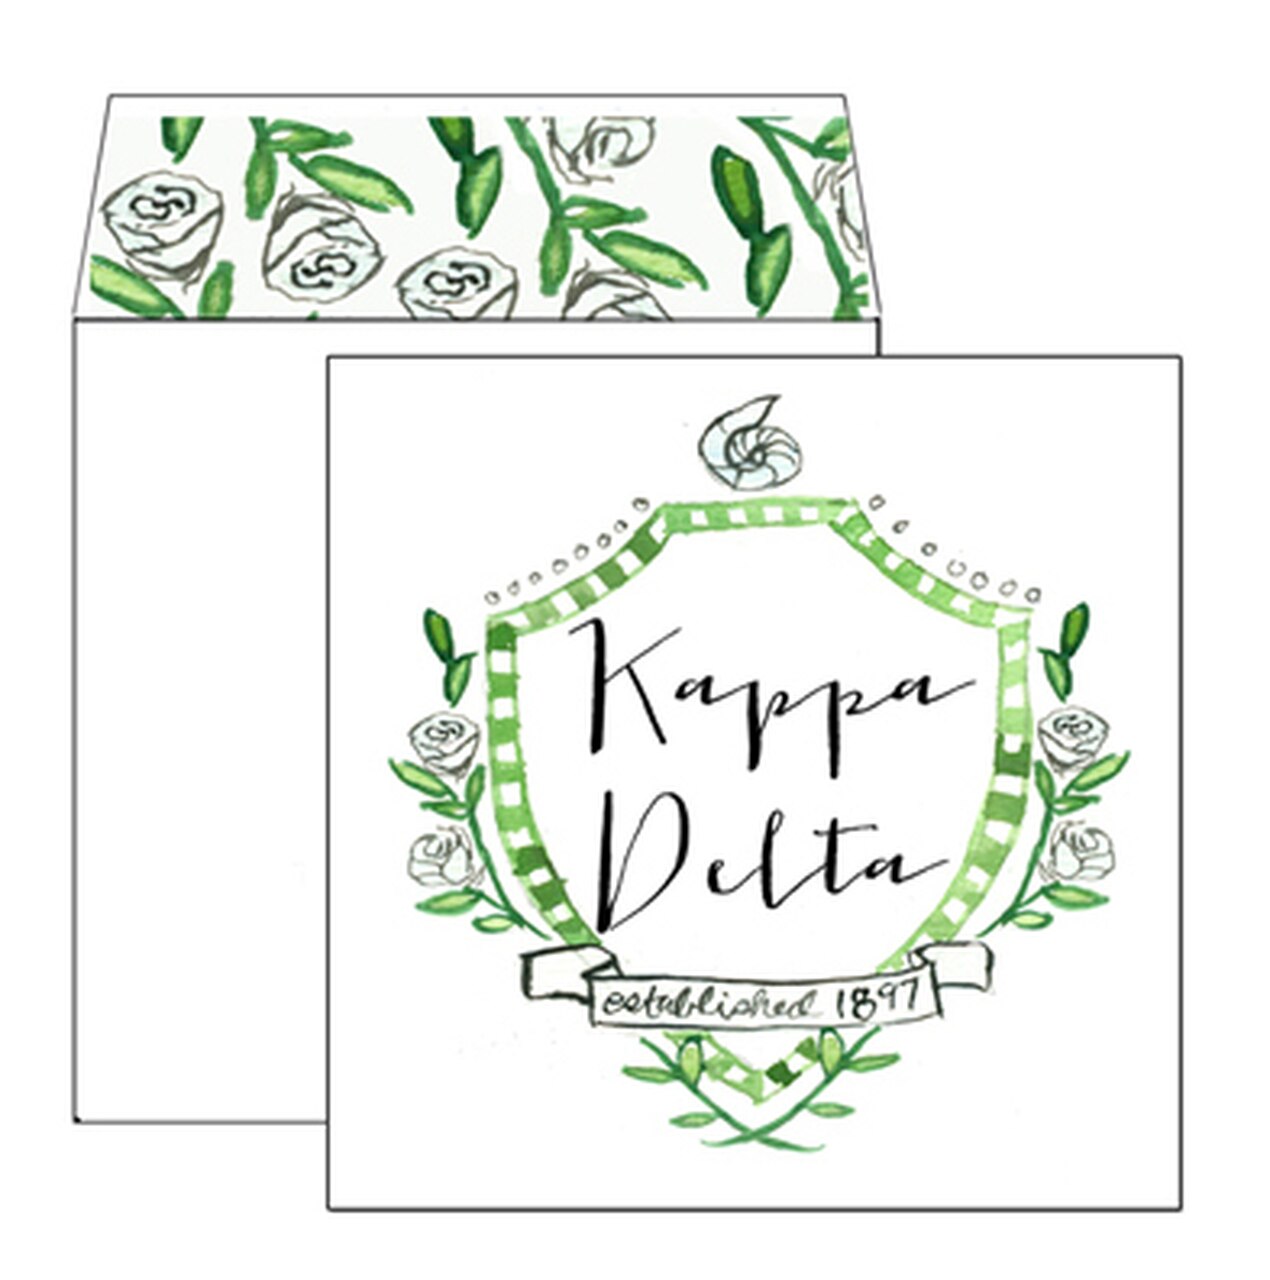 Kappa Delta Motif Greeting Card